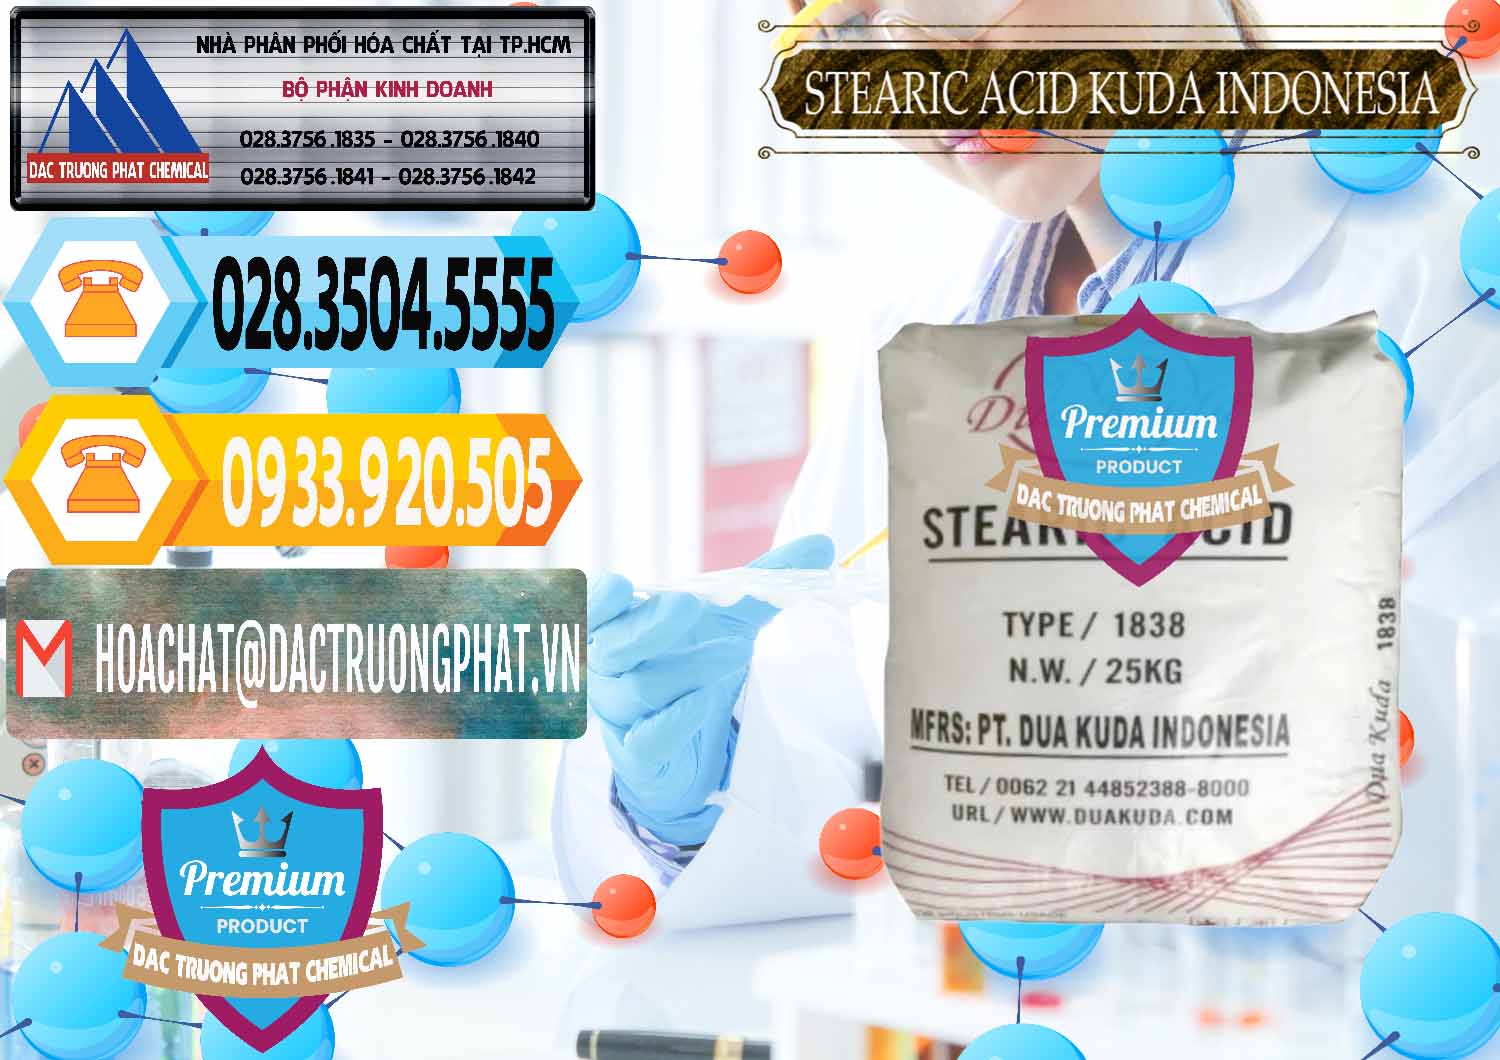 Đơn vị chuyên cung ứng và bán Axit Stearic - Stearic Acid Dua Kuda Indonesia - 0388 - Cty chuyên nhập khẩu - cung cấp hóa chất tại TP.HCM - hoachattayrua.net